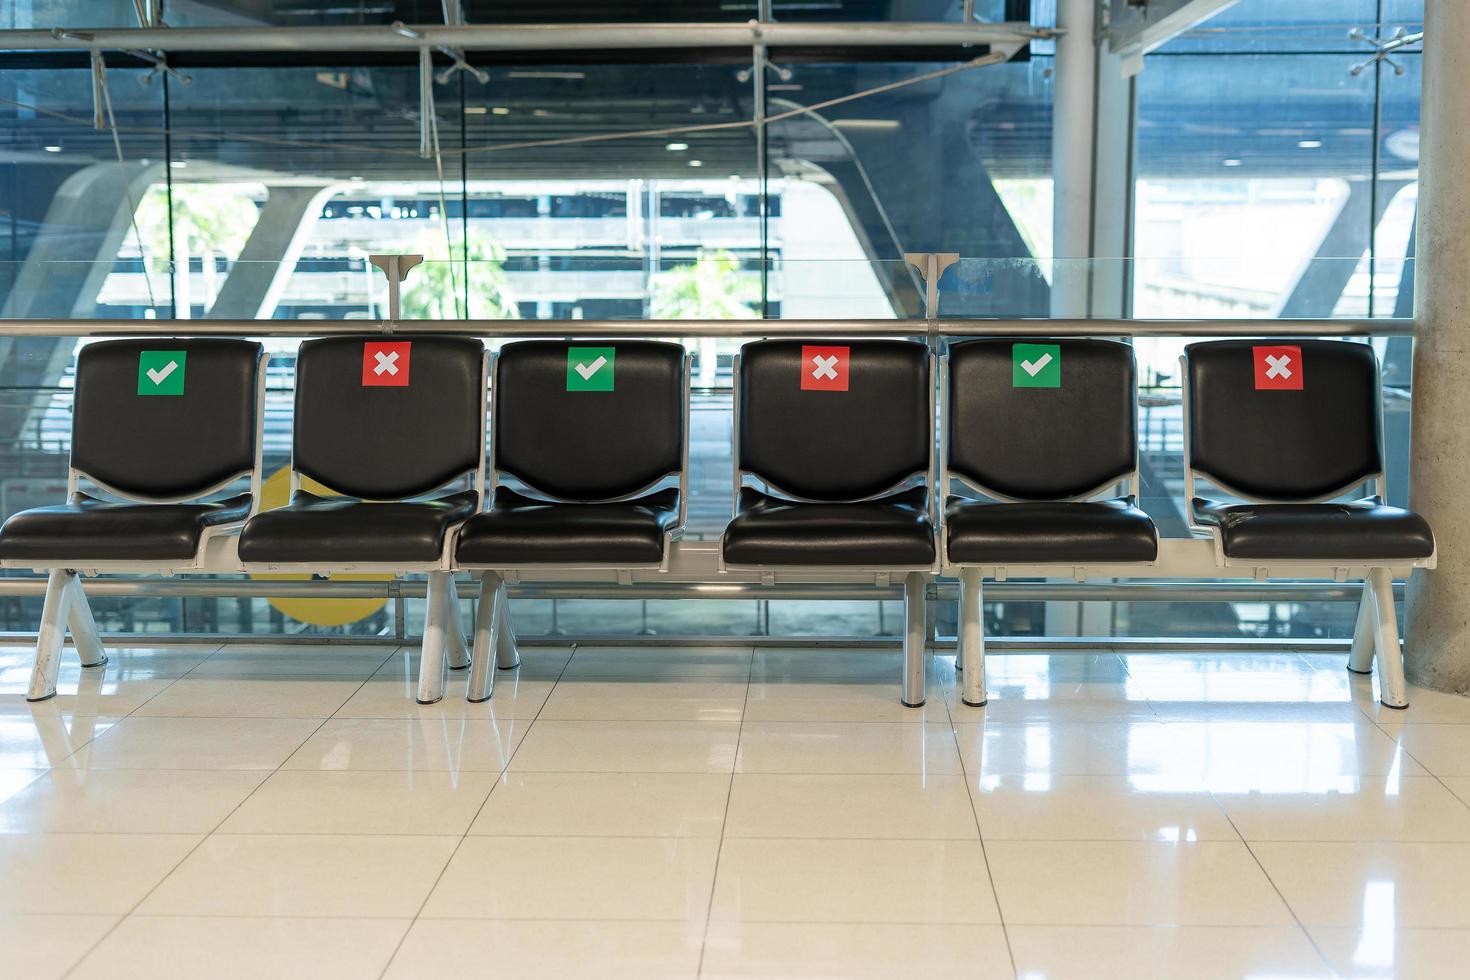 diseños de sillas públicas espaciados socialmente durante la situación del covid-19 en la terminal del aeropuerto. concepto de distancia social. foto